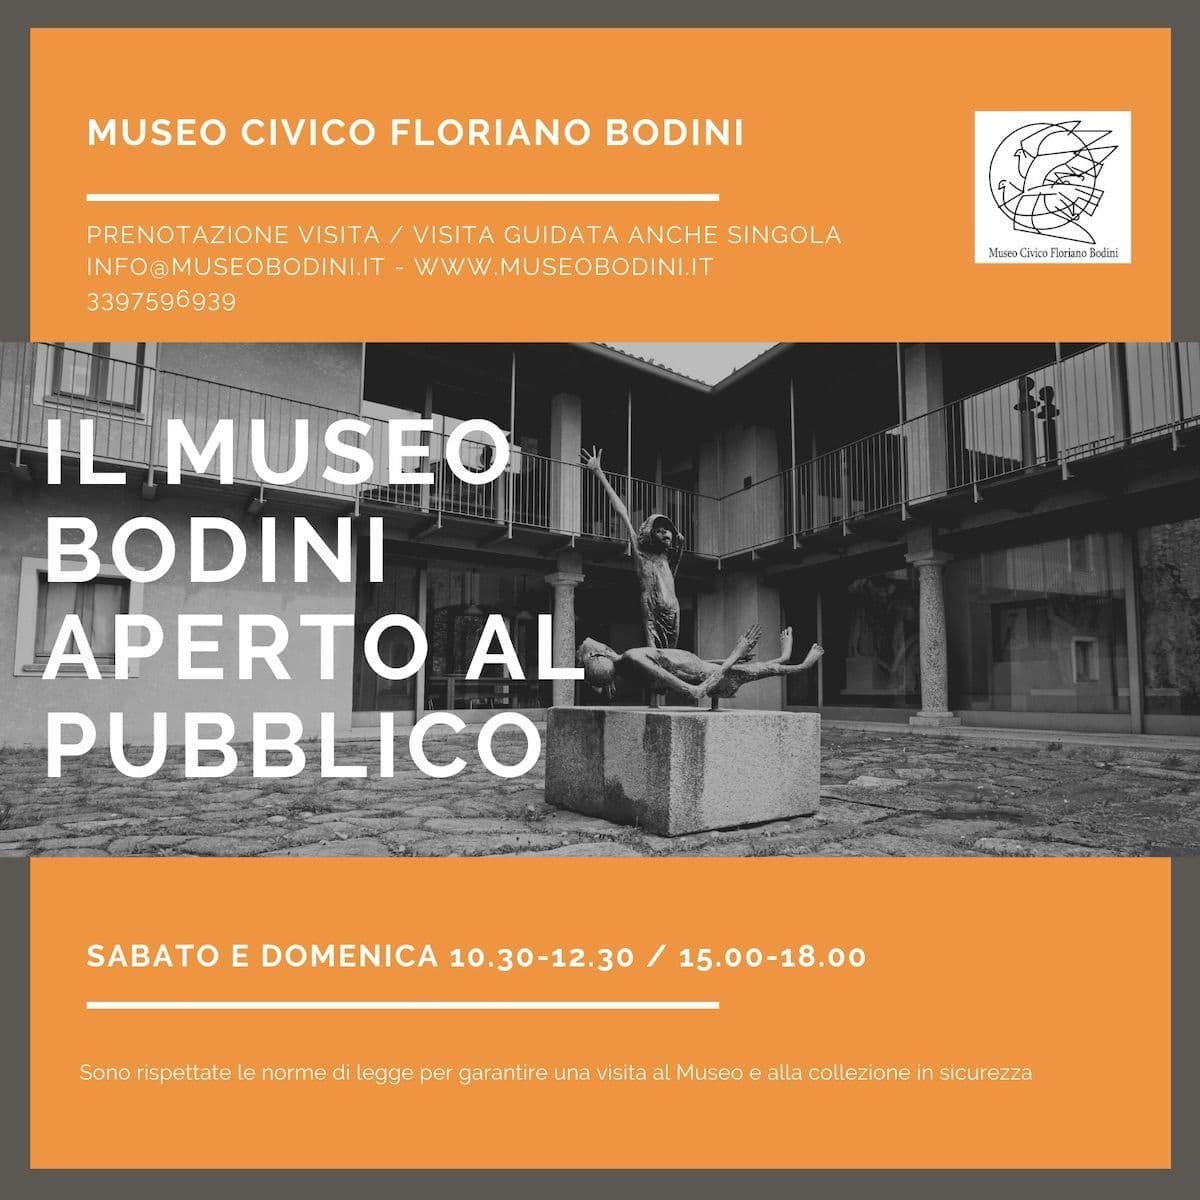 Gemonio, al Museo Bodini "Il bisogno di ritrovarsi", mostra fino al 3 agosto